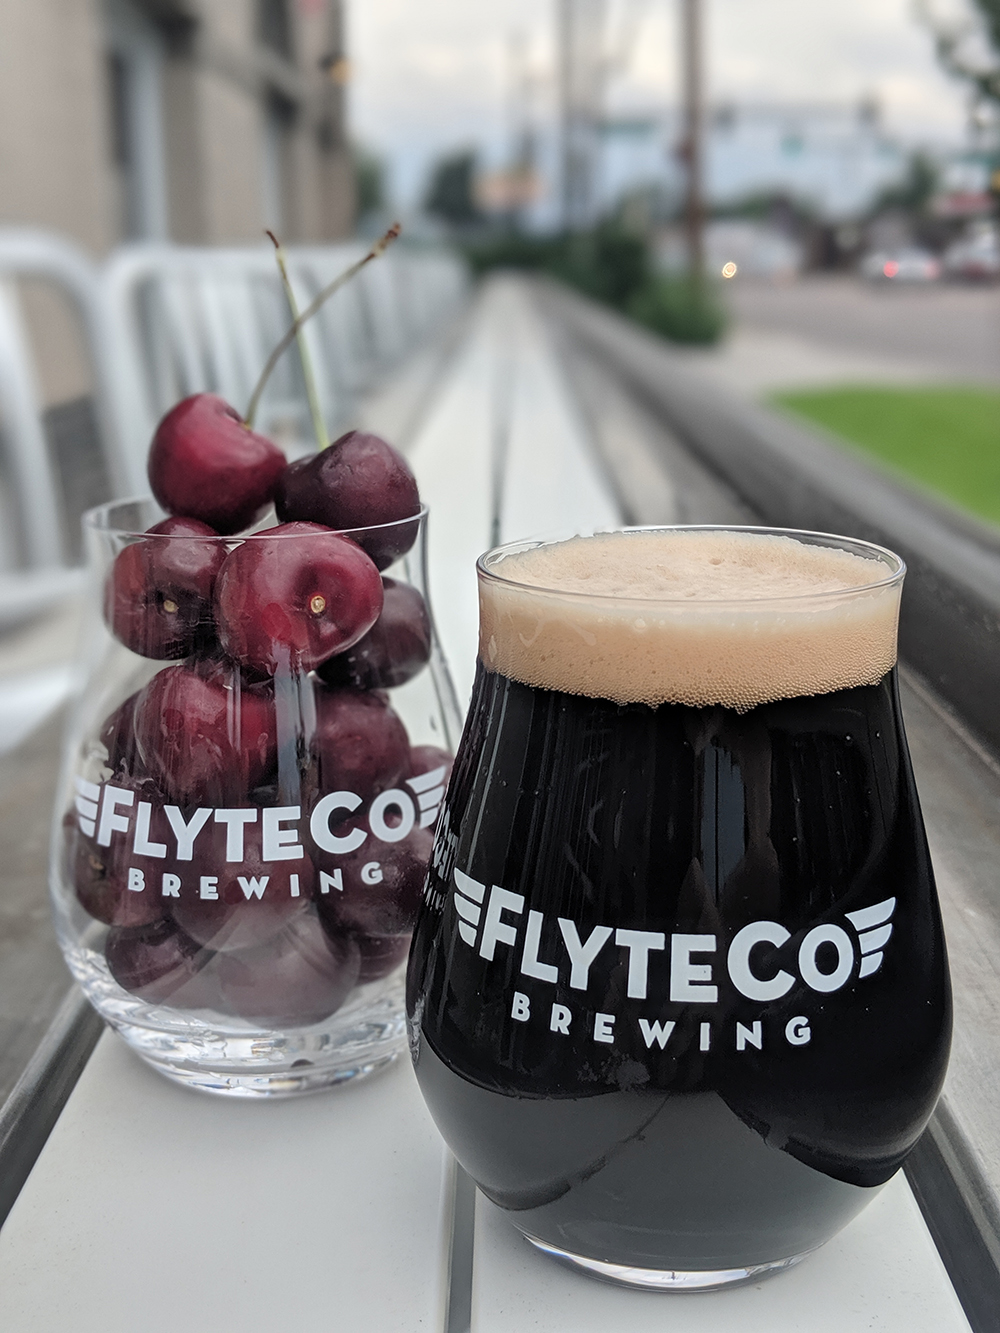 FlyteCo Brewing in Denver, Colorado